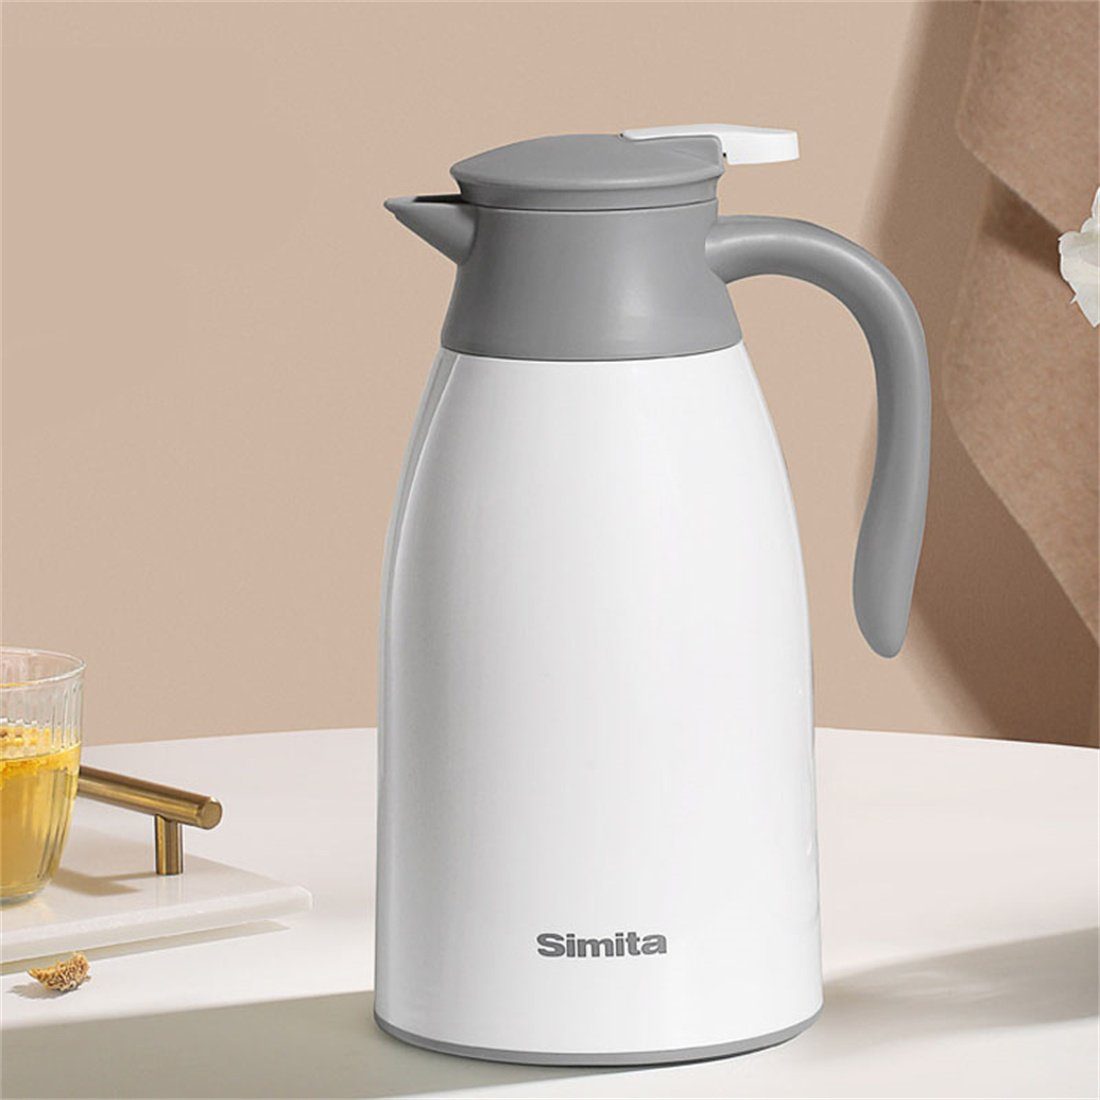 den für Weiß DÖRÖY Isolierkessel Isolierkanne Hausgebrauch,Heißwasserkocher,Kaffeemaschine1.6L